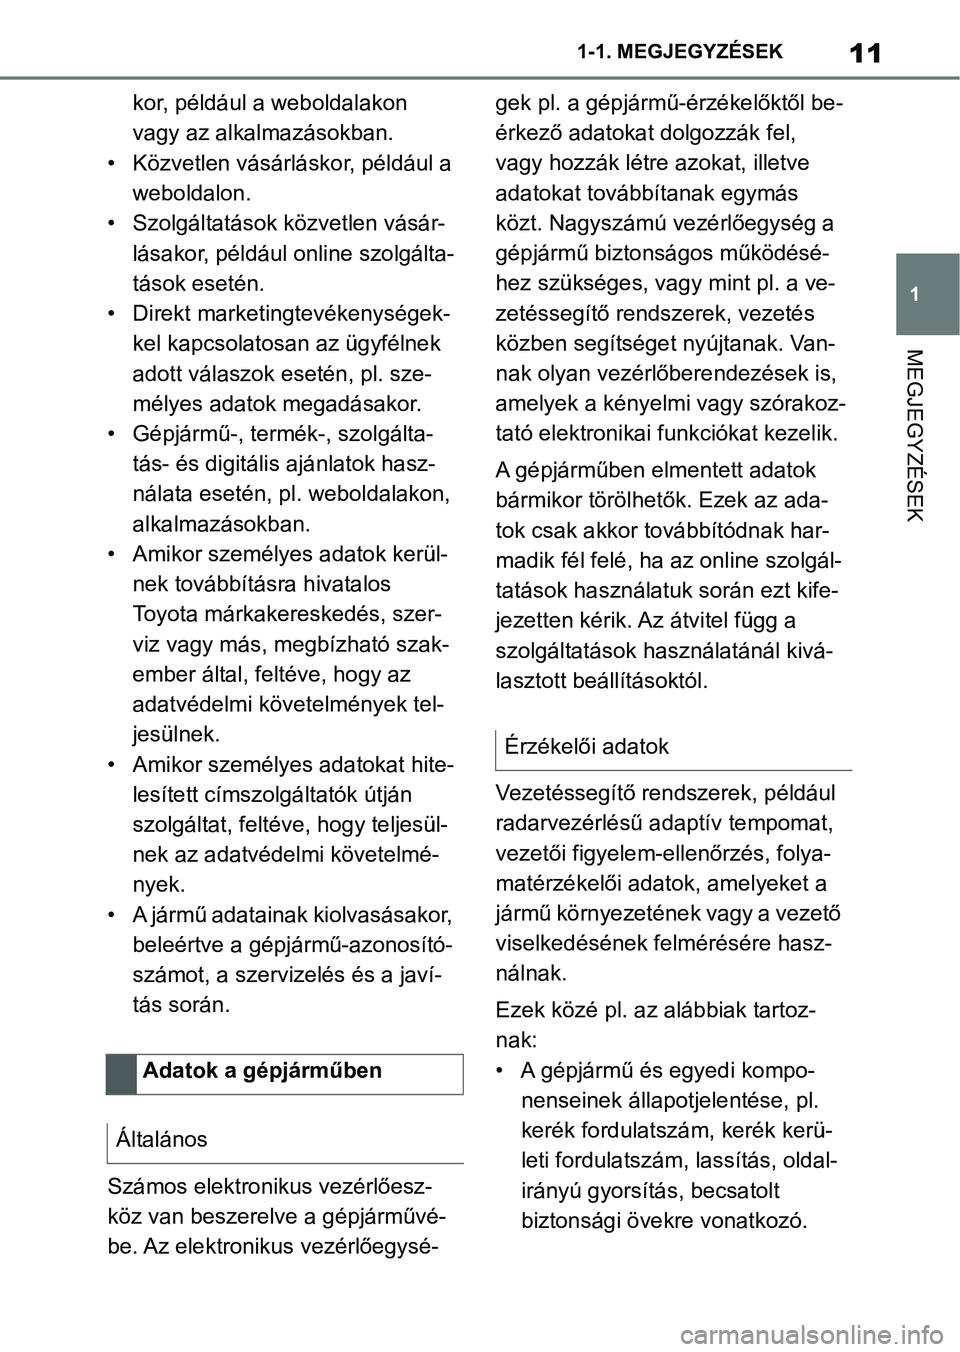 TOYOTA SUPRA 2020  Kezelési útmutató (in Hungarian) 11
1
1-1. MEGJEGYZÉSEK
MEGJEGYZÉSEK
kor, például a weboldalakon 
vagy az alkalmazásokban.
• Közvetlen vásárláskor, például a  weboldalon.
• Szolgáltatások közvetlen vásár- lásakor